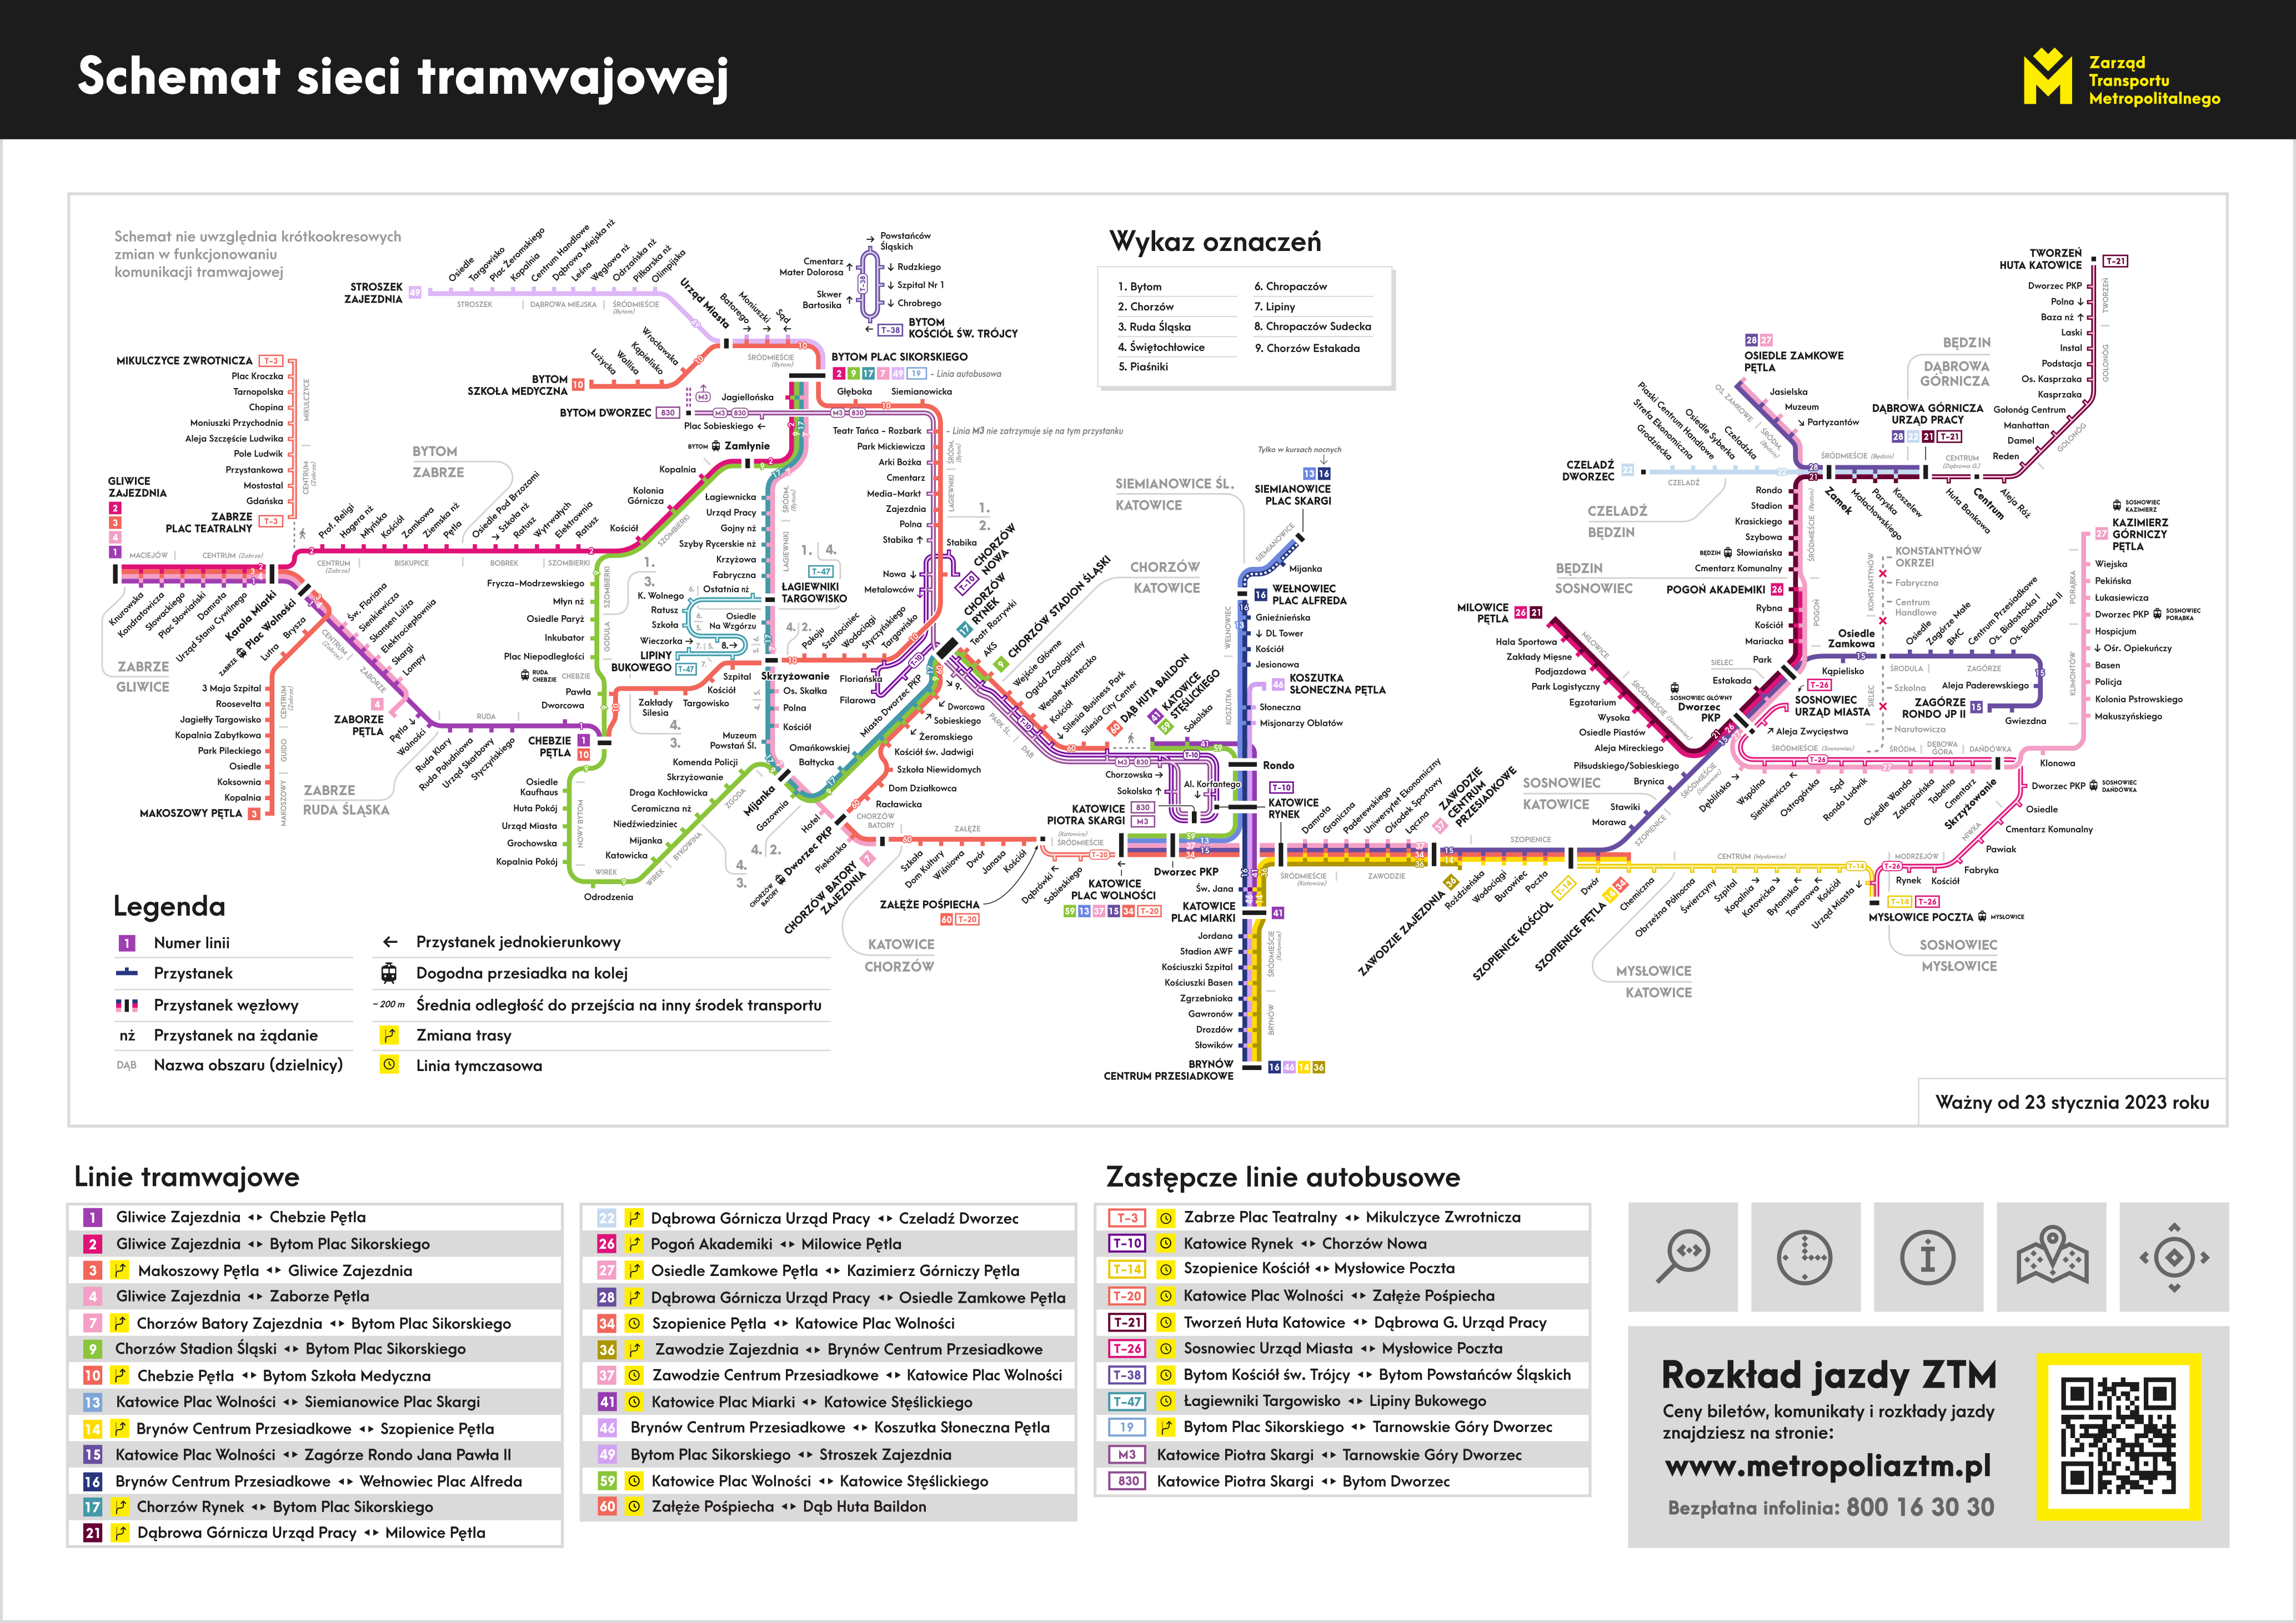 Schemat sieci tramwajowej - ważny od 23.01.2023